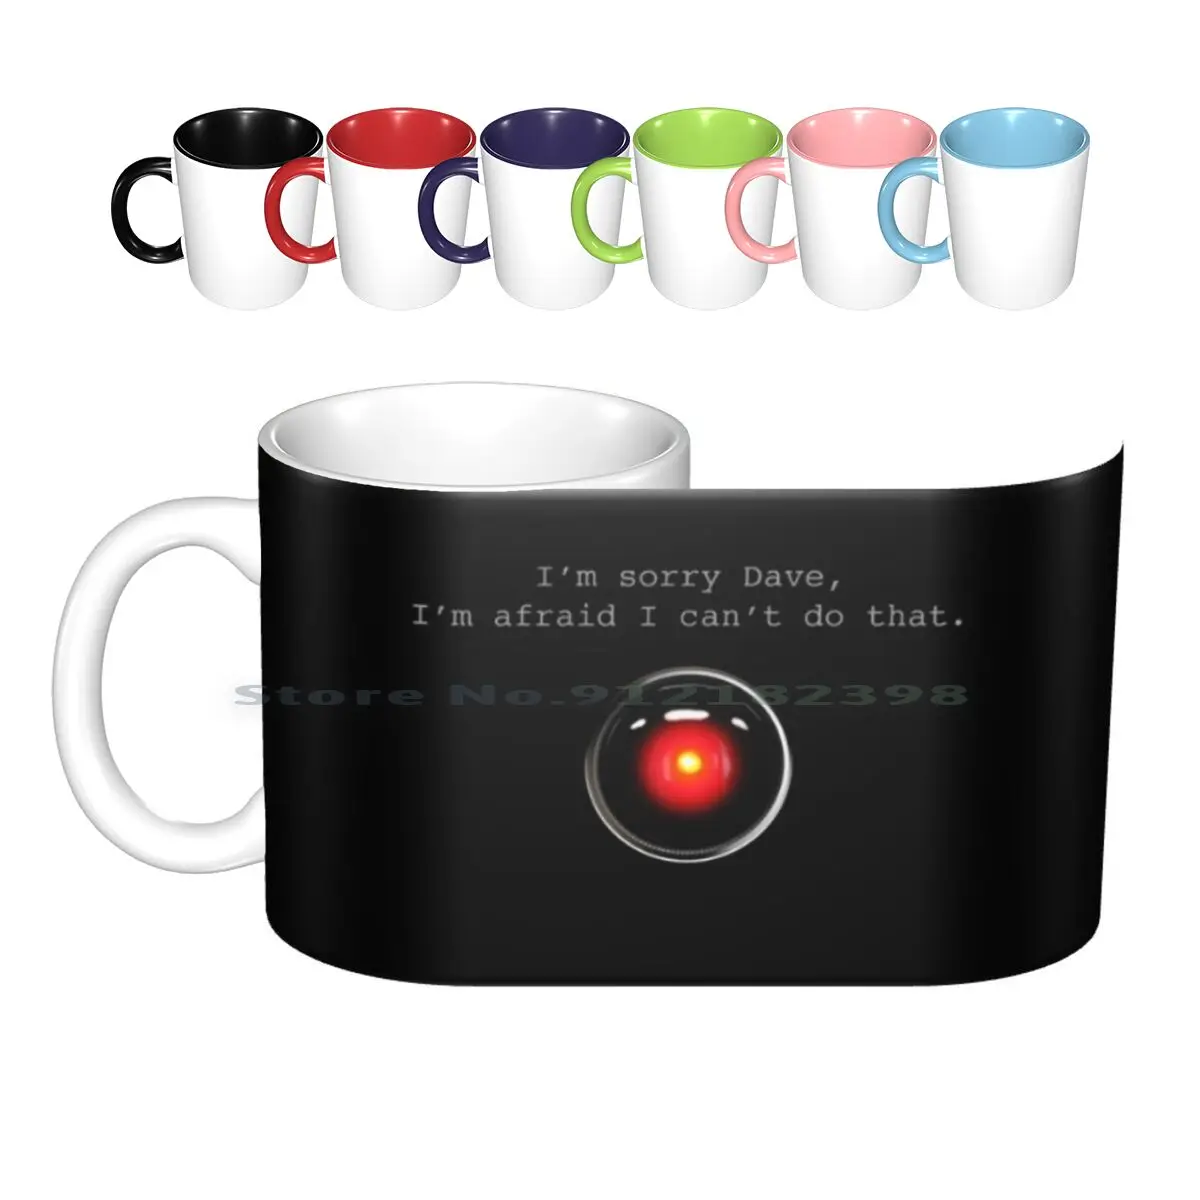 

Извините, Дейв-а, Космические керамические кружки, кофейные чашки, кружка для молока и чая Hal 9000 Hal9000, космическая станция Space 2001 Kubrick